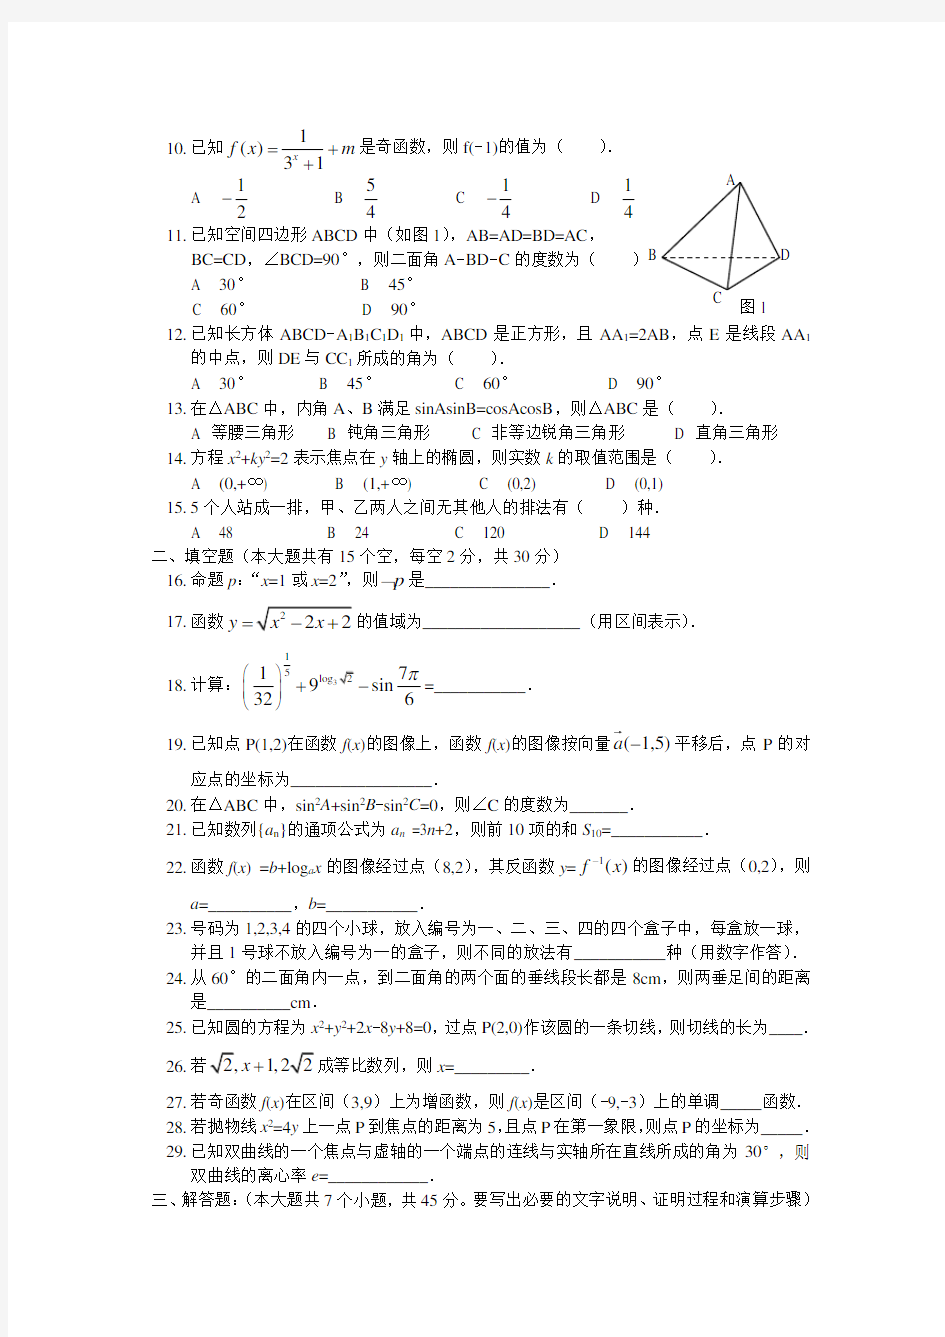 2010年河北省对口高考数学试题